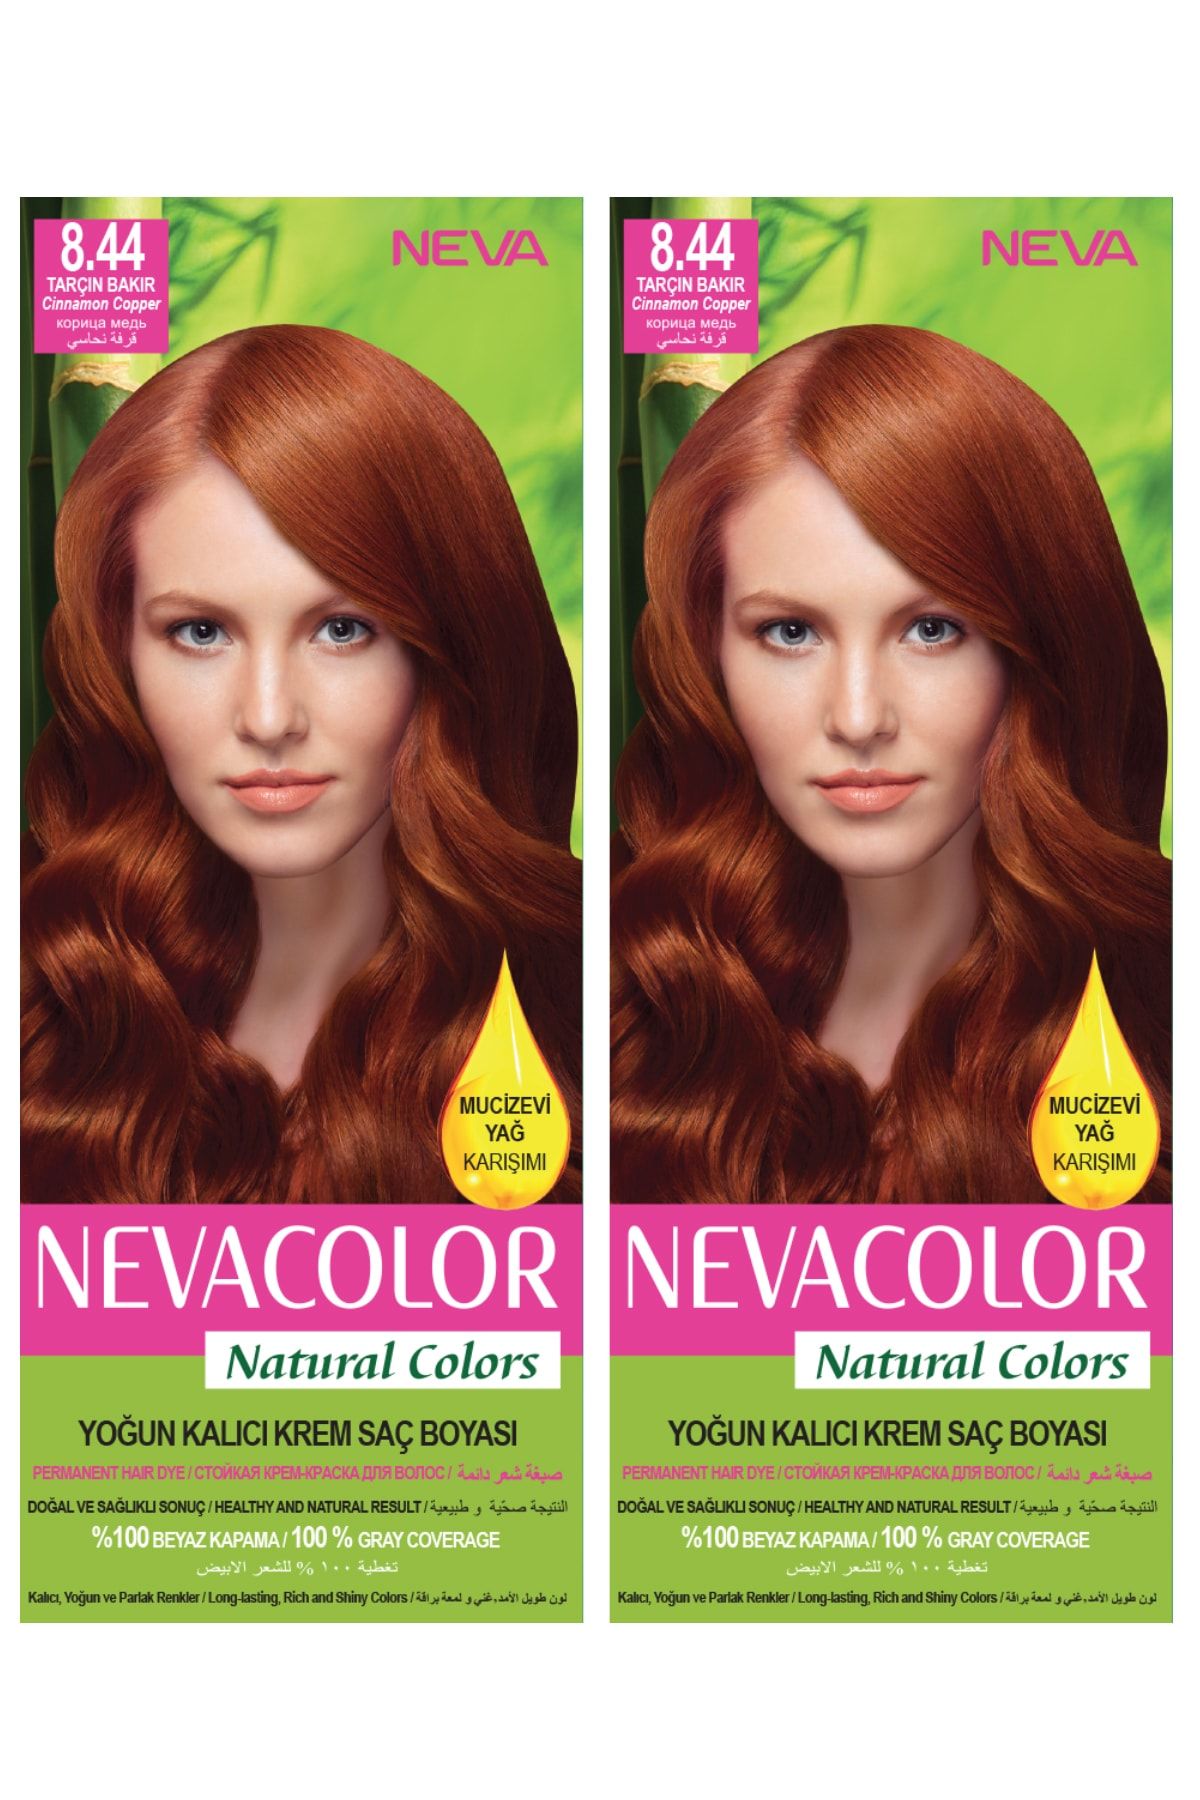 Neva Color 2’li Natural Colors 8.44 Tarçın Bakır - Kalıcı Krem Saç Boyası Seti